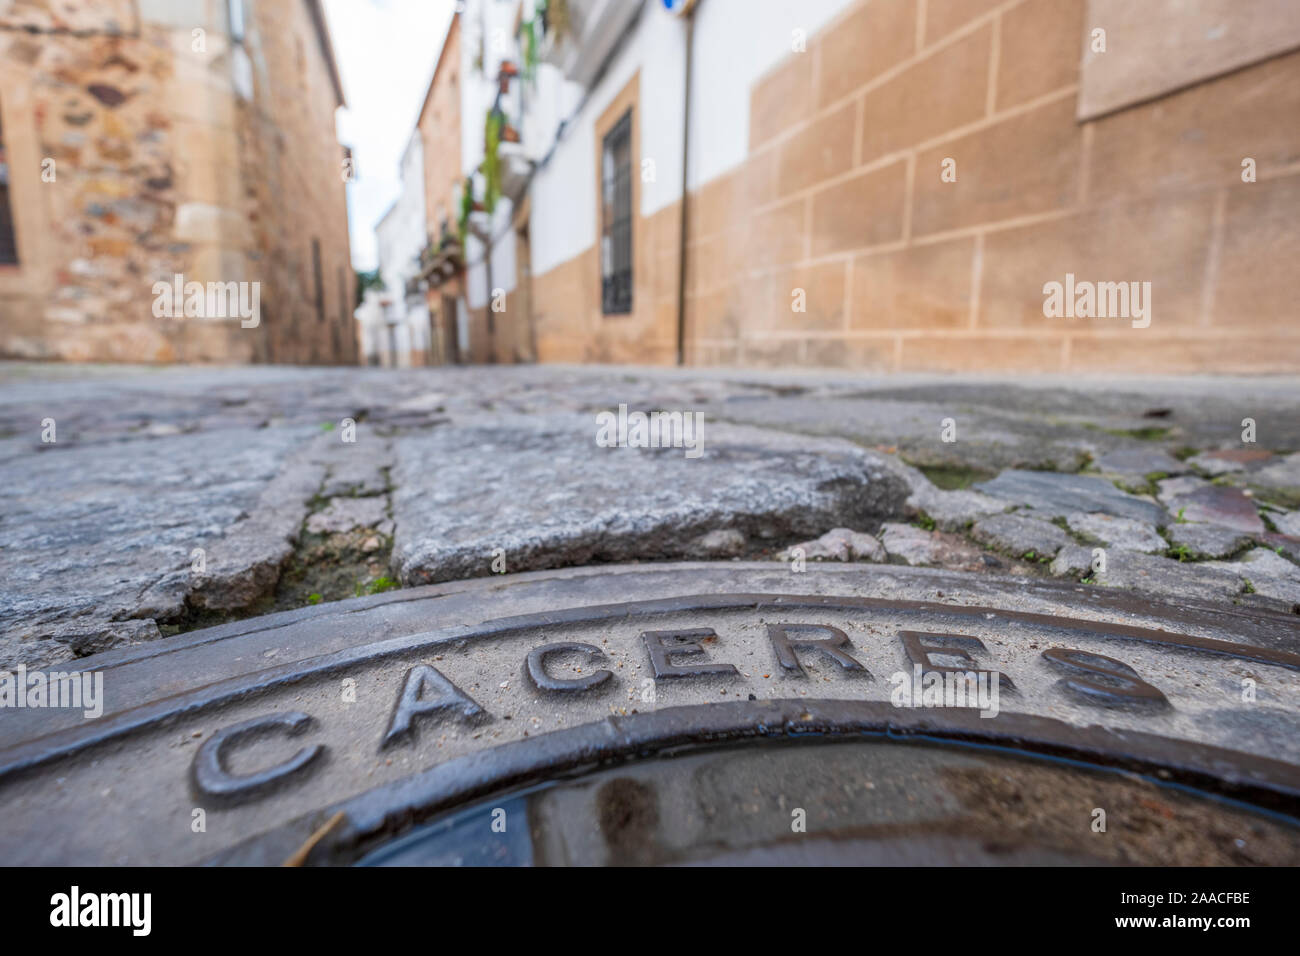 Chiusino per le strade con iscrizione caceres nel vecchio omonima capitale storica della provincia di Cáceres, Estremadura, Spagna Foto Stock